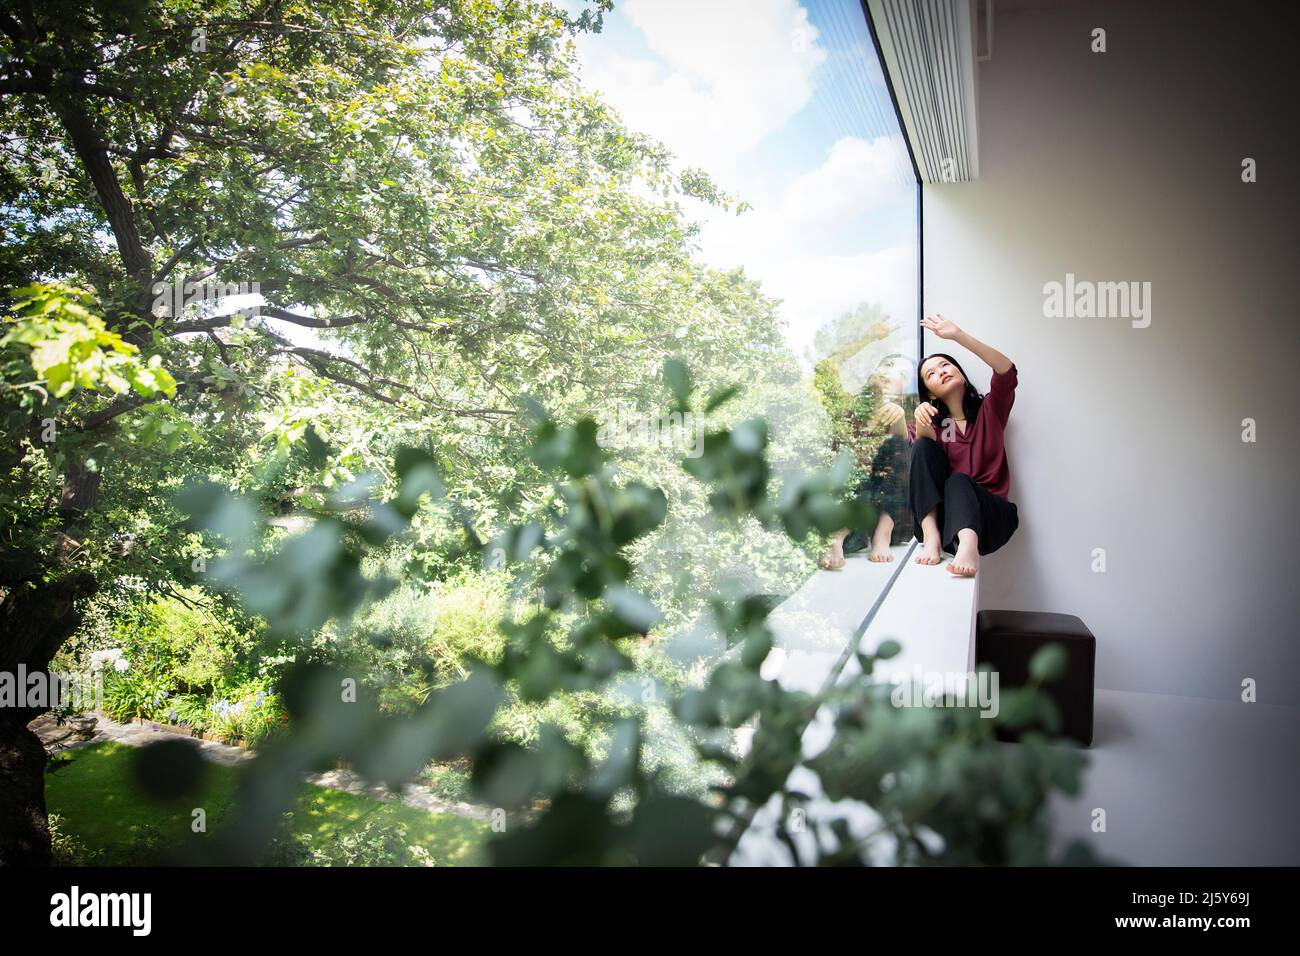 Mujer joven sentada en la ventana con vista a los árboles verdes Foto de stock